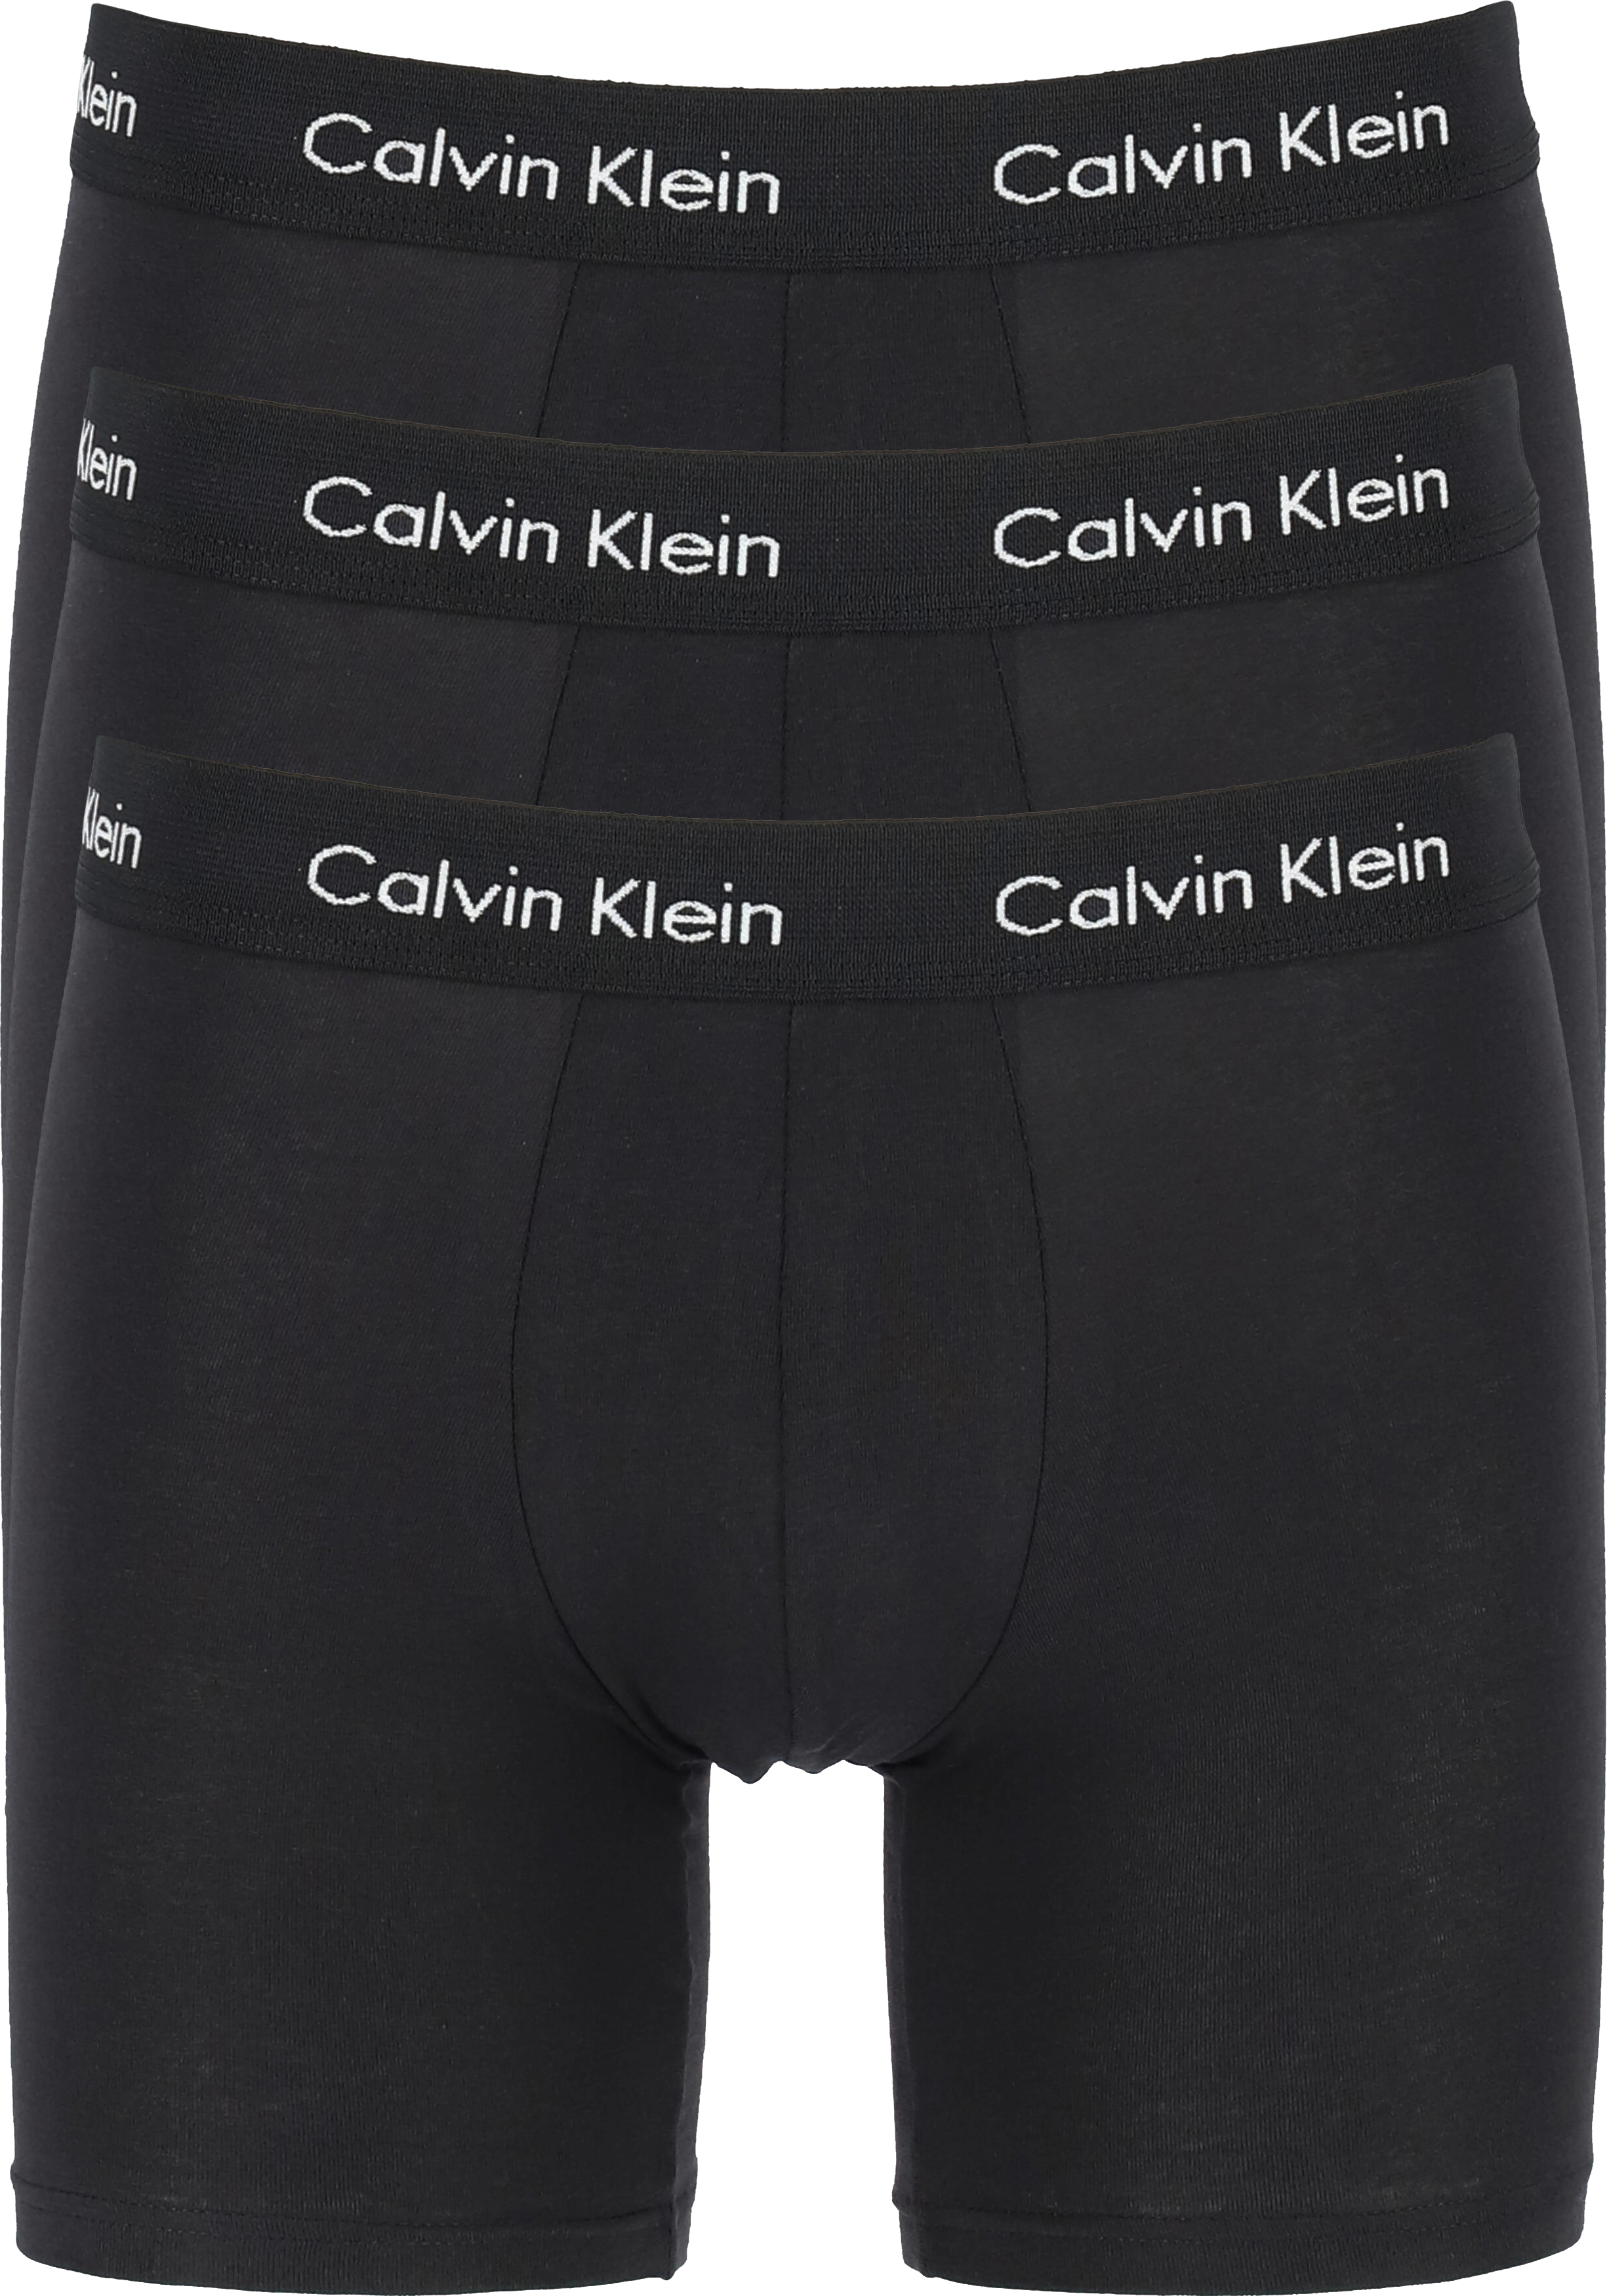 Calvin Klein Cotton Stretch boxer brief (3-pack), heren boxers extra lang, zwart met zwarte tailleband 